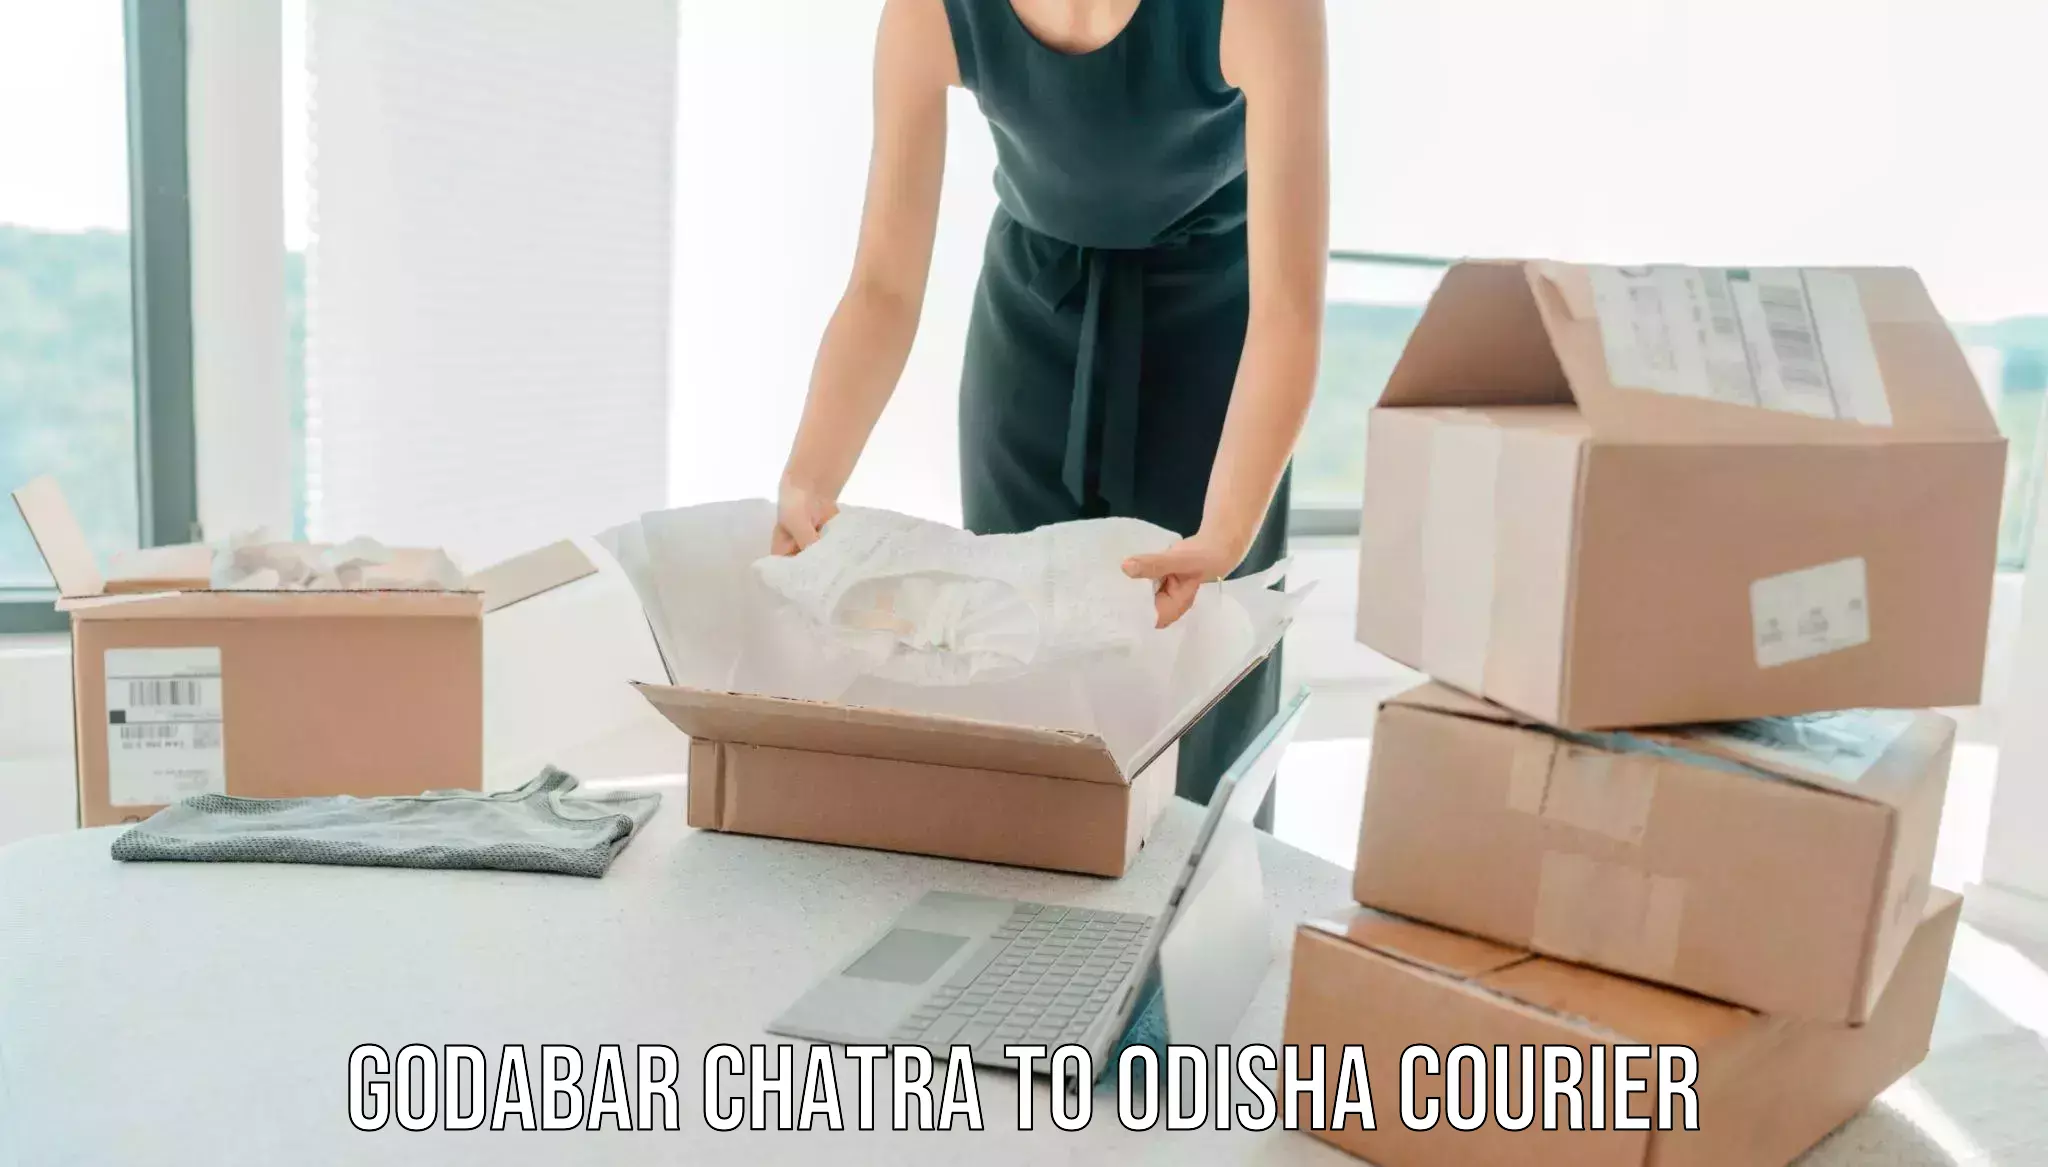 Trusted home movers Godabar Chatra to Odisha